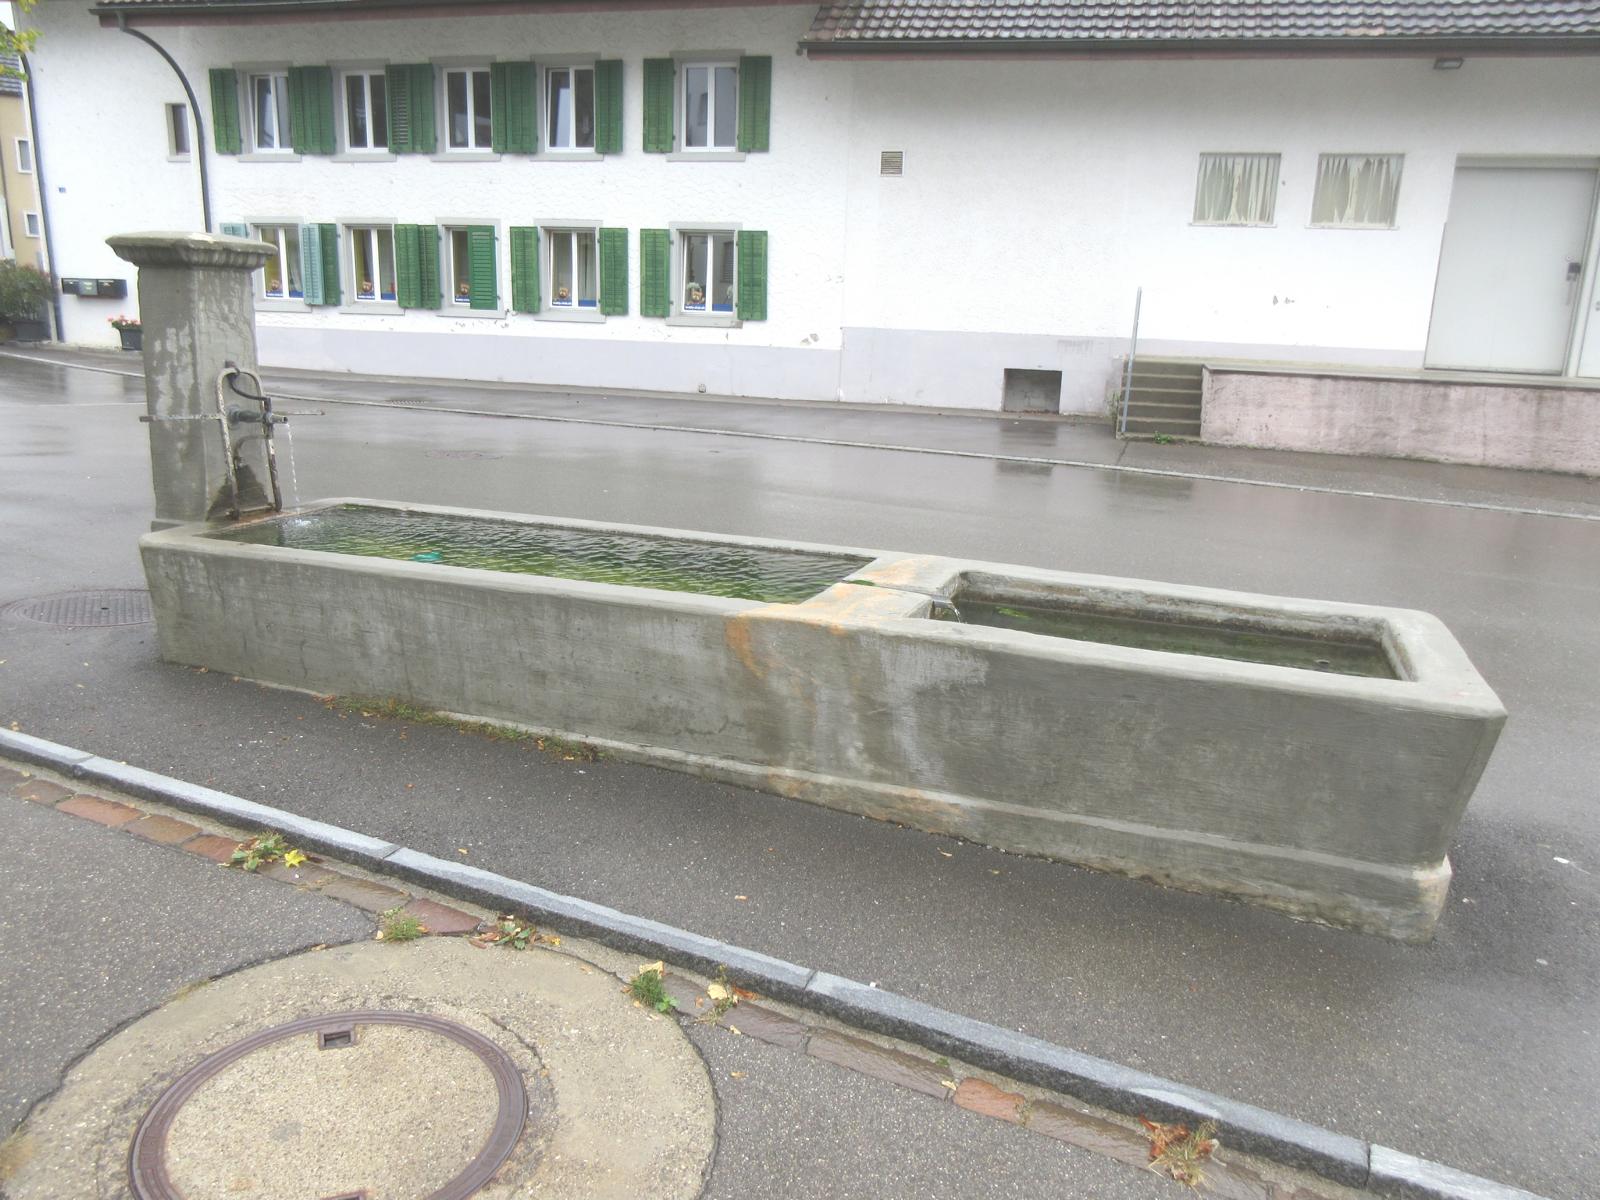 Poststrasse / Brunnenweg *** o.J. *** Beton *** Beton *** Haupt- und Sudelbecken; <a href="./files/wasseranalyse_zh_-_huettikon.pdf" target="_blank">Wasseranalyse</a>